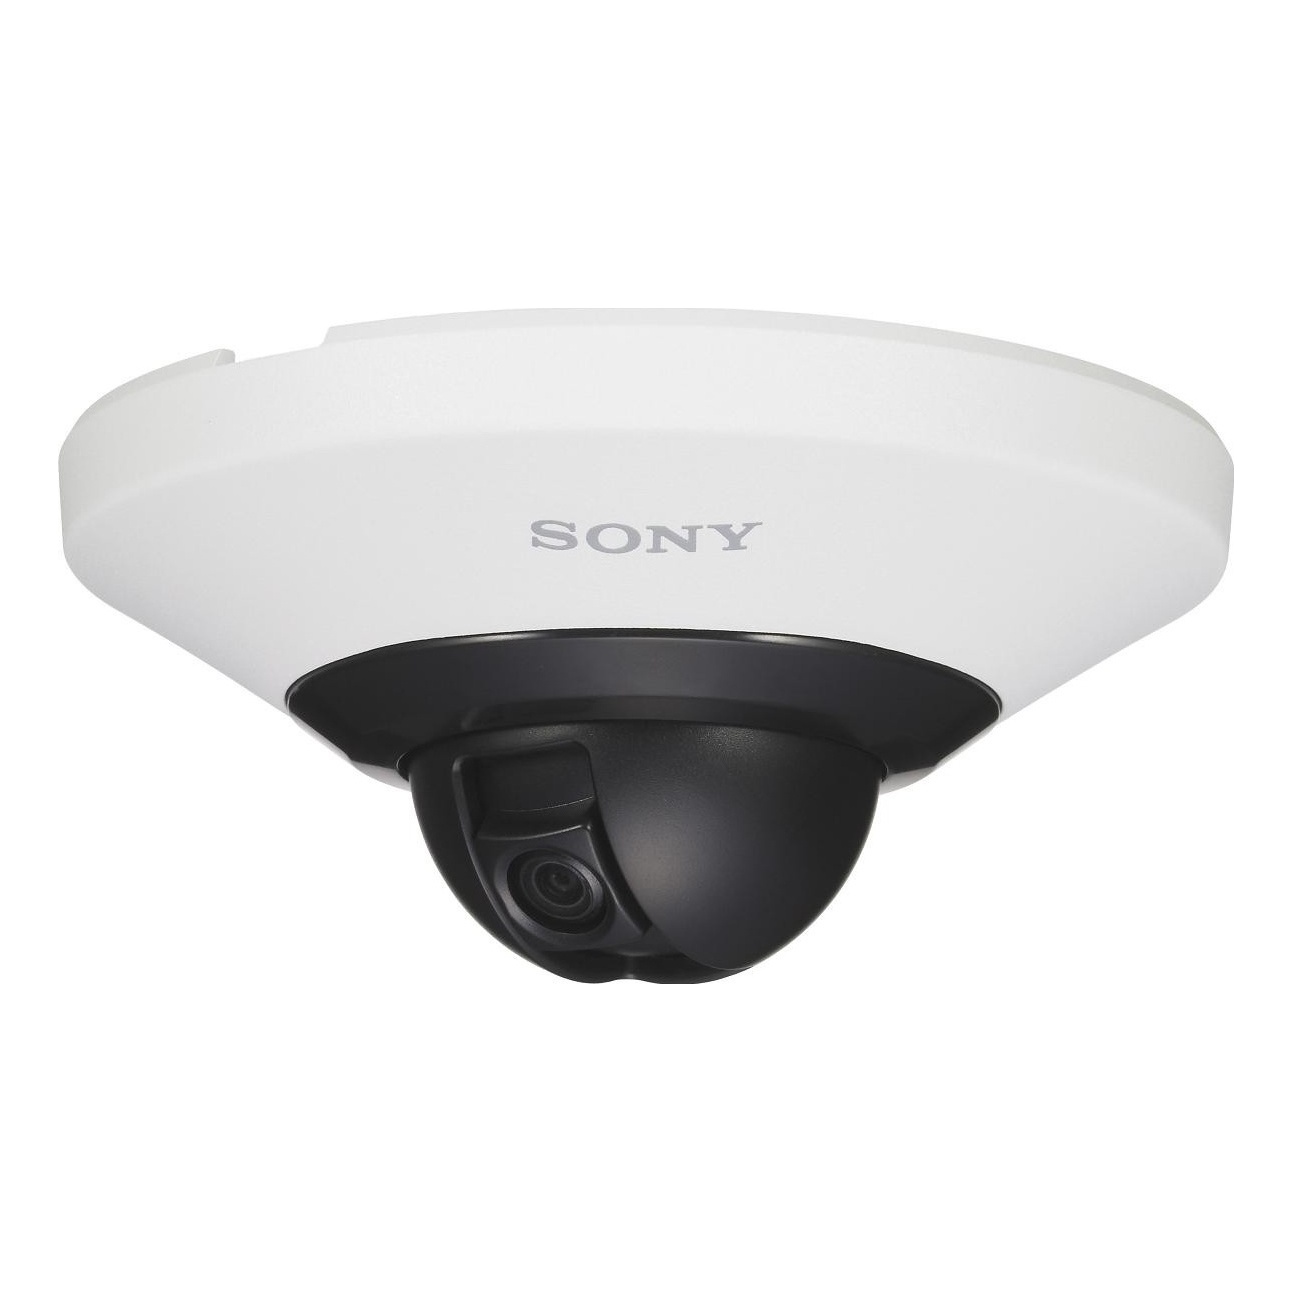 Sony SNC-DH110W IP видеокамера